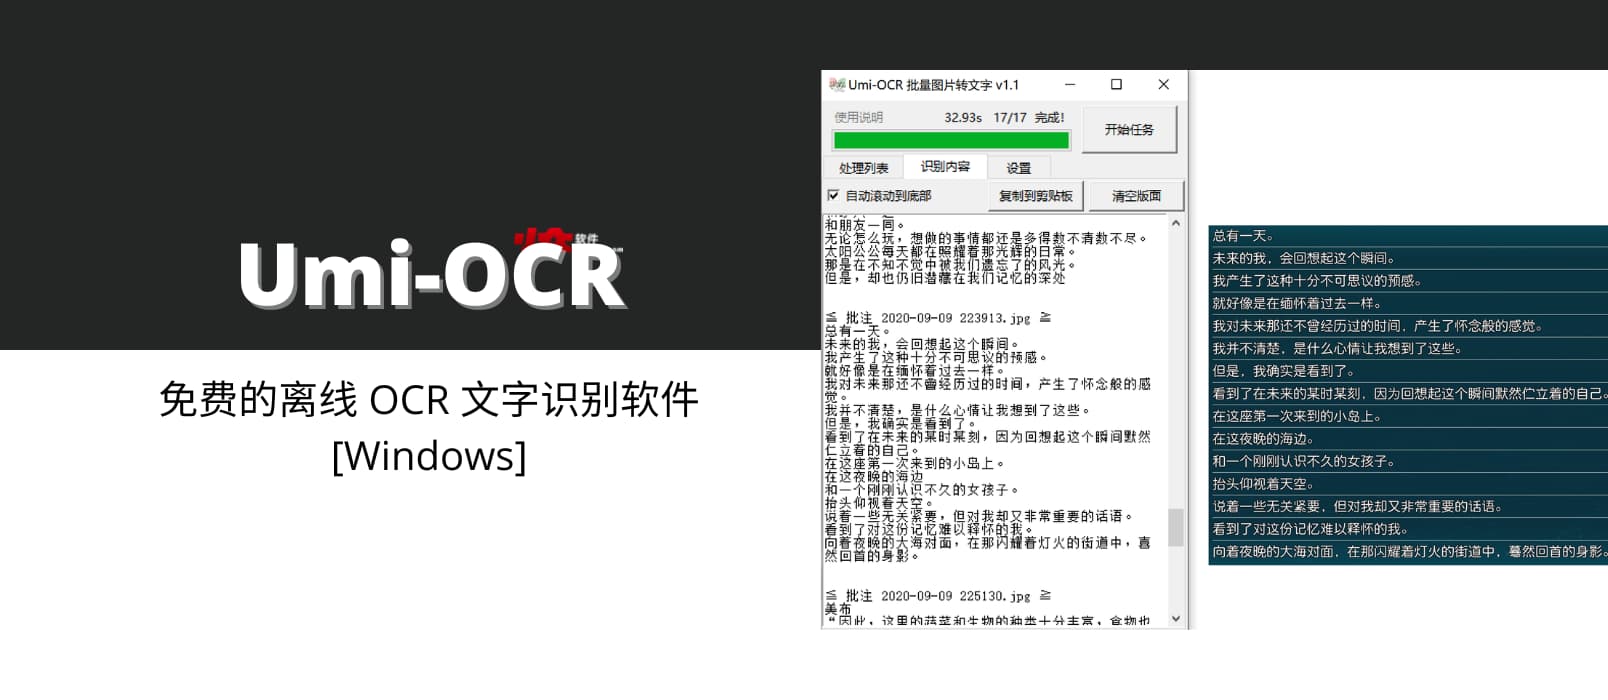 Umi-OCR - 免费的离线 OCR 文字识别软件[Windows]